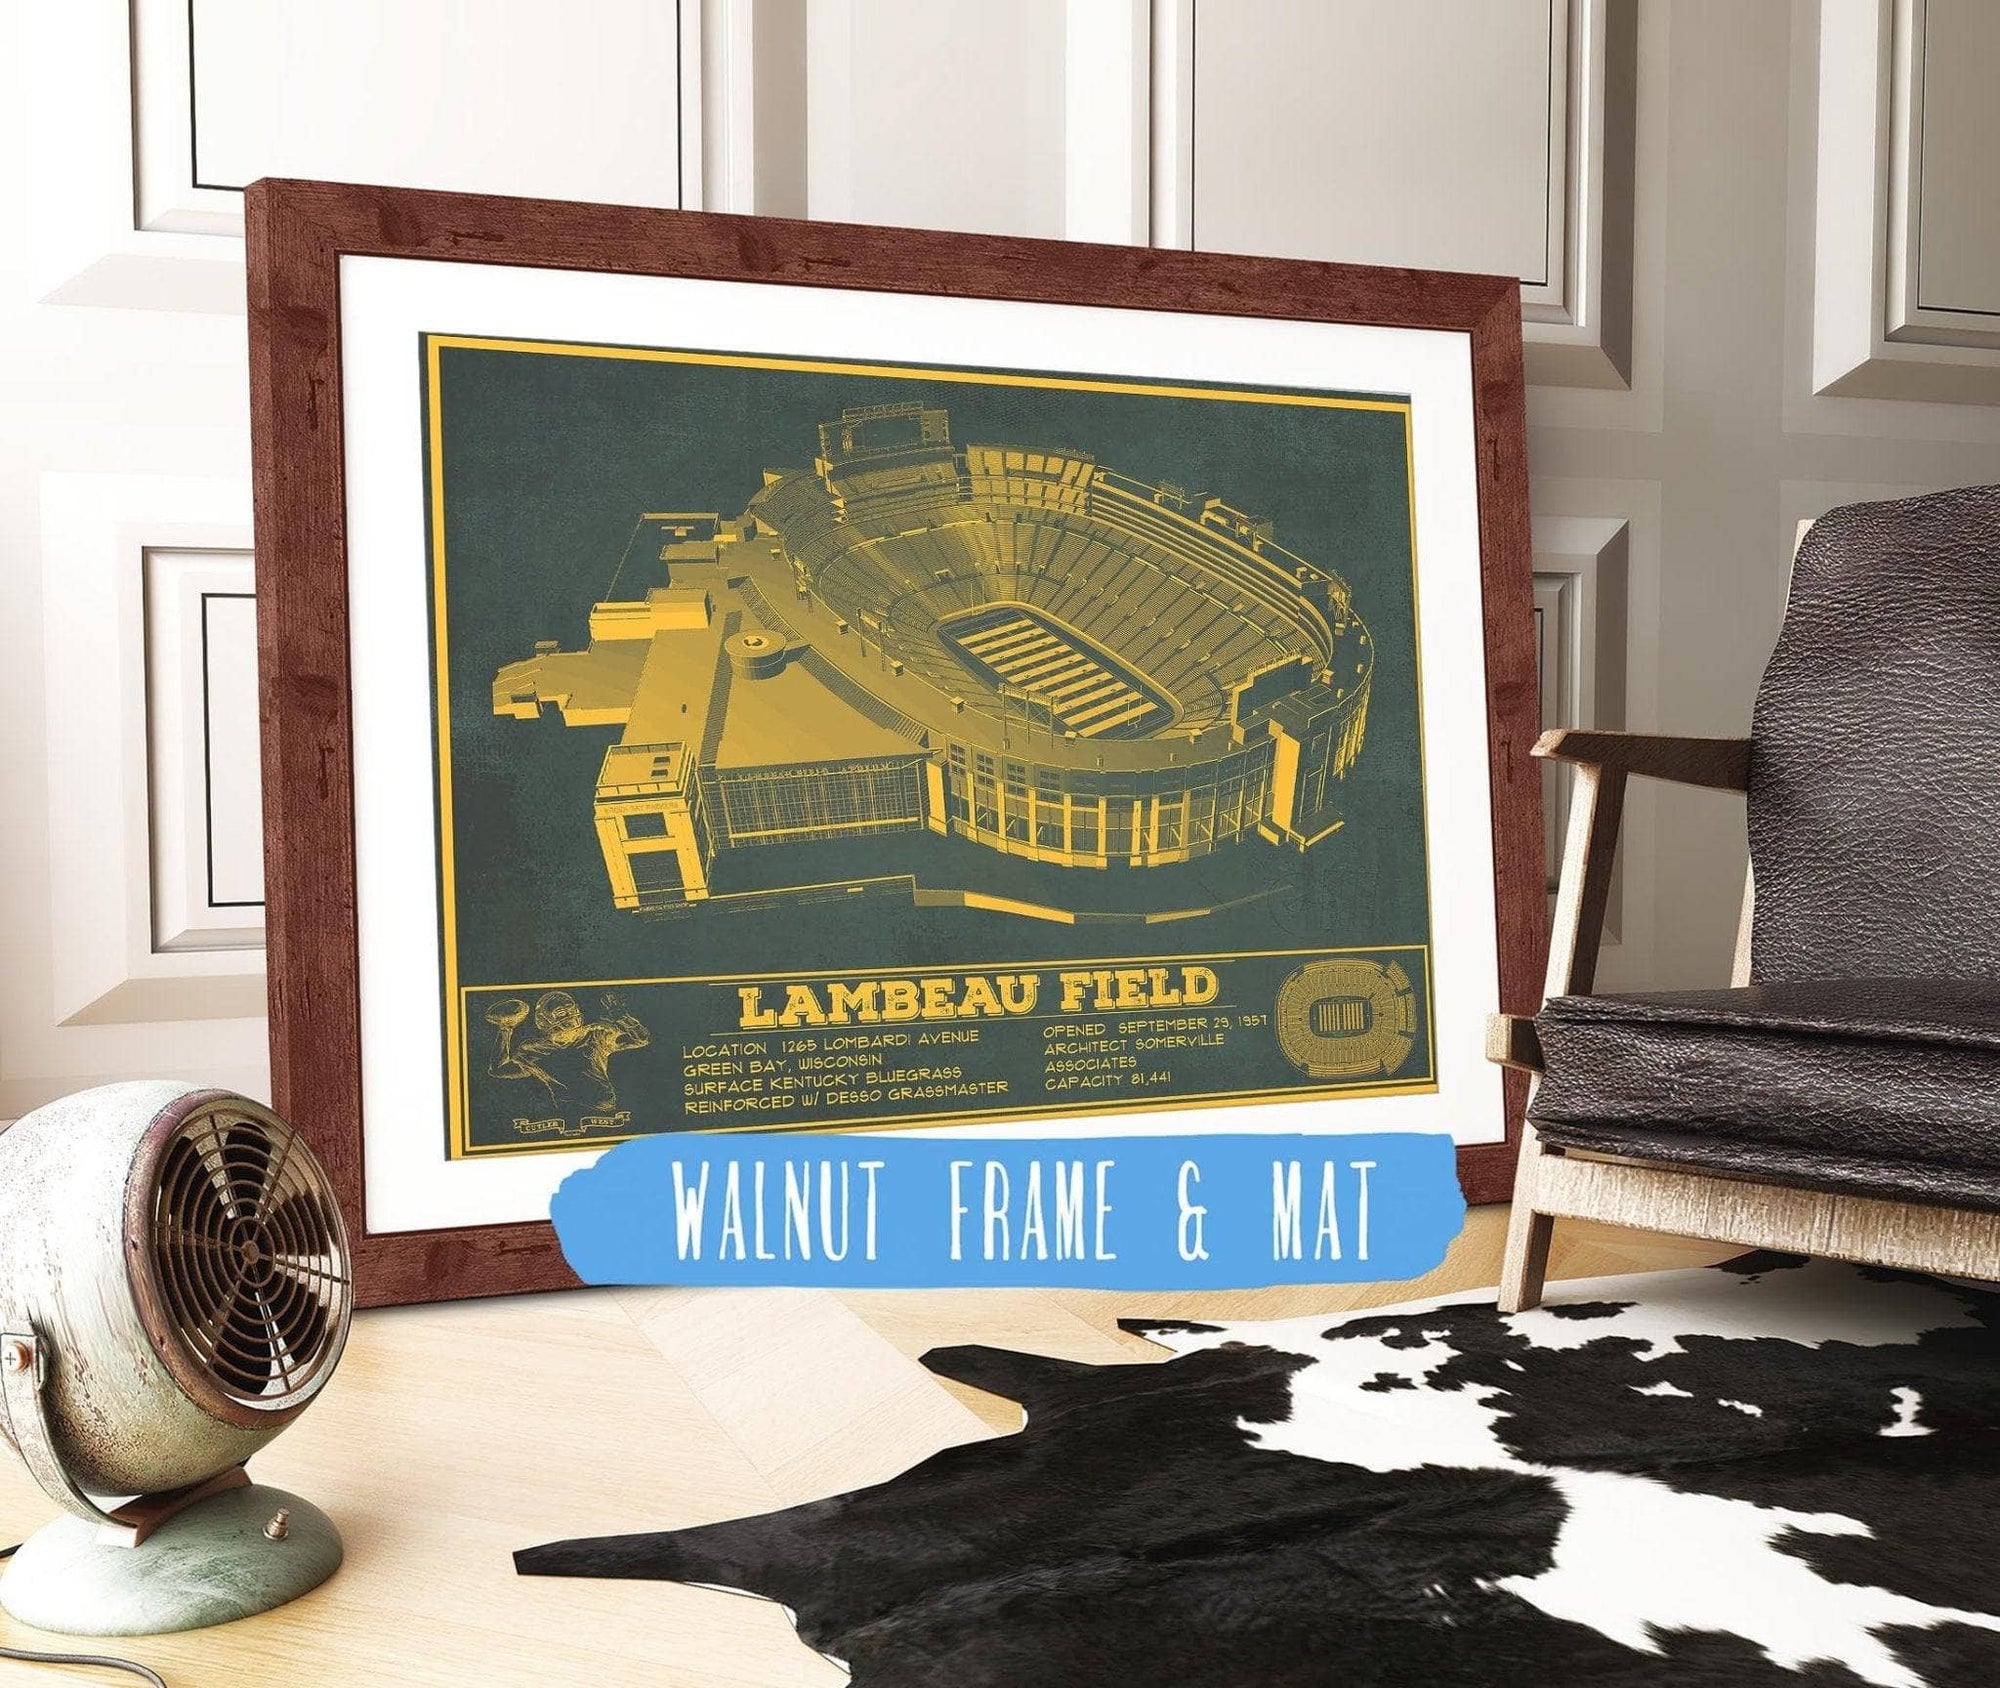 Cutler West Pro Football Collection 14" x 11" / Walnut Frame & Mat Green Bay Packers - Lambeau Field Vintage Football Print 698877220-TEAM